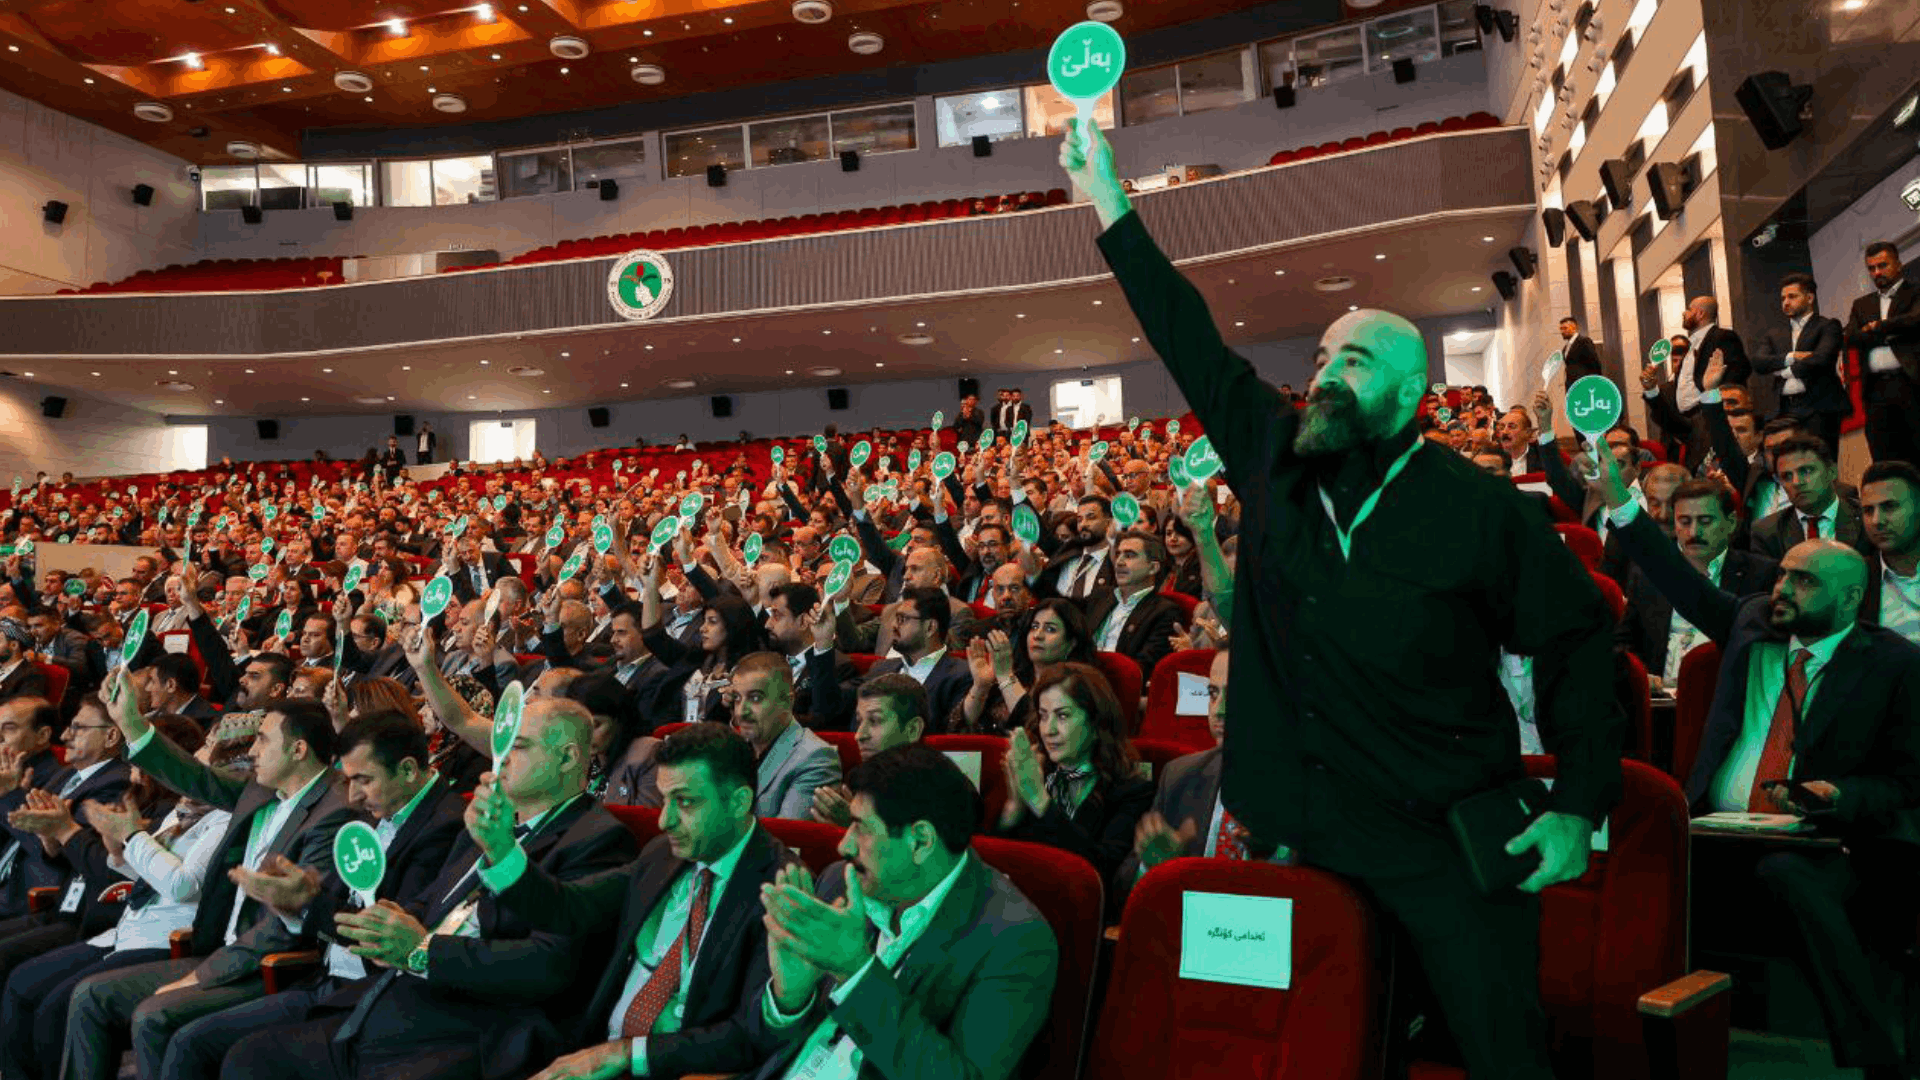 المؤتمر الخامس للاتحاد الوطني الكوردستاني 